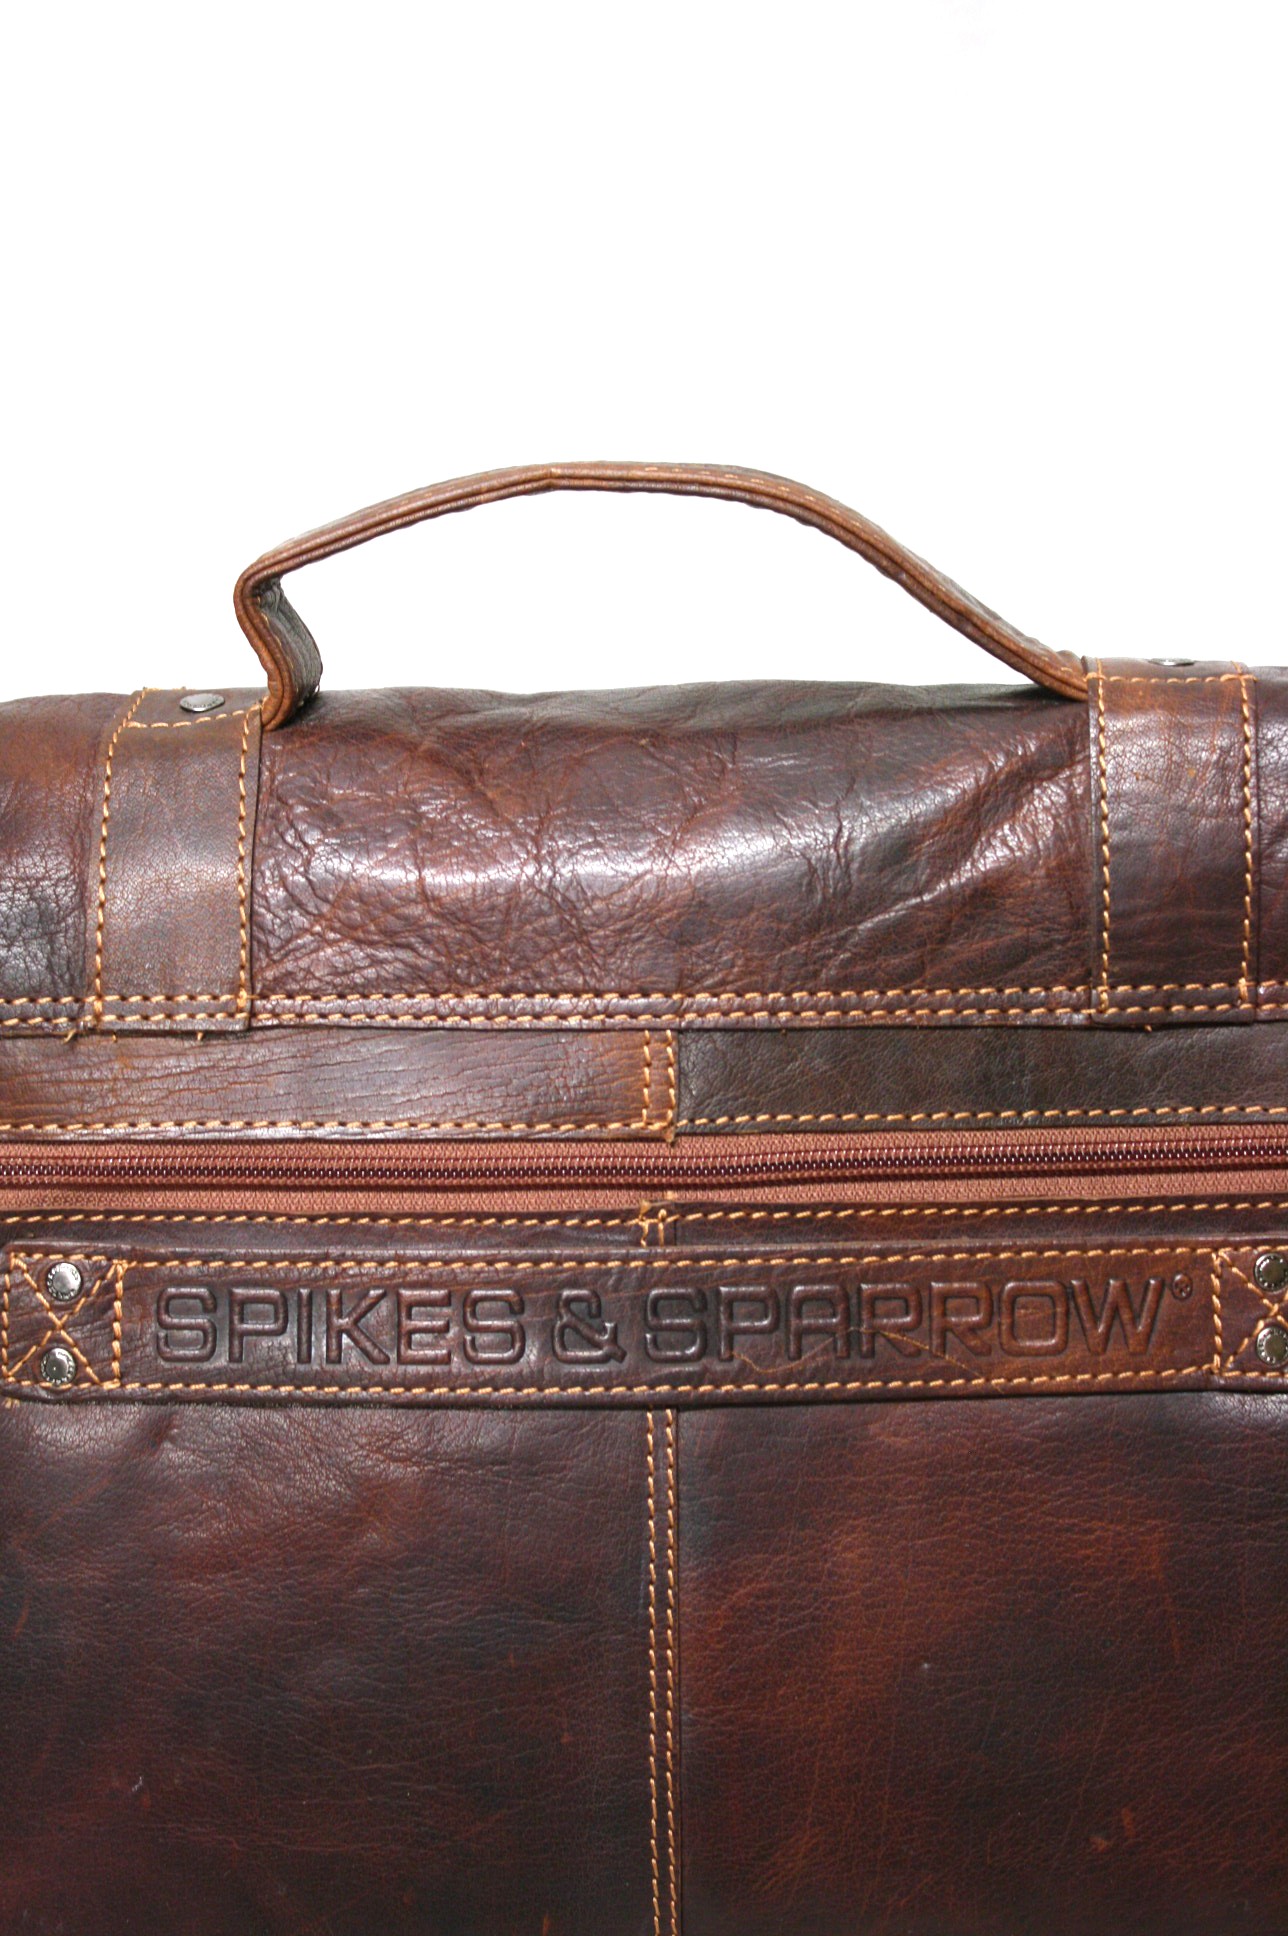 Spikes & Sparrow Aktentasche im Vintage Leder in Brandy